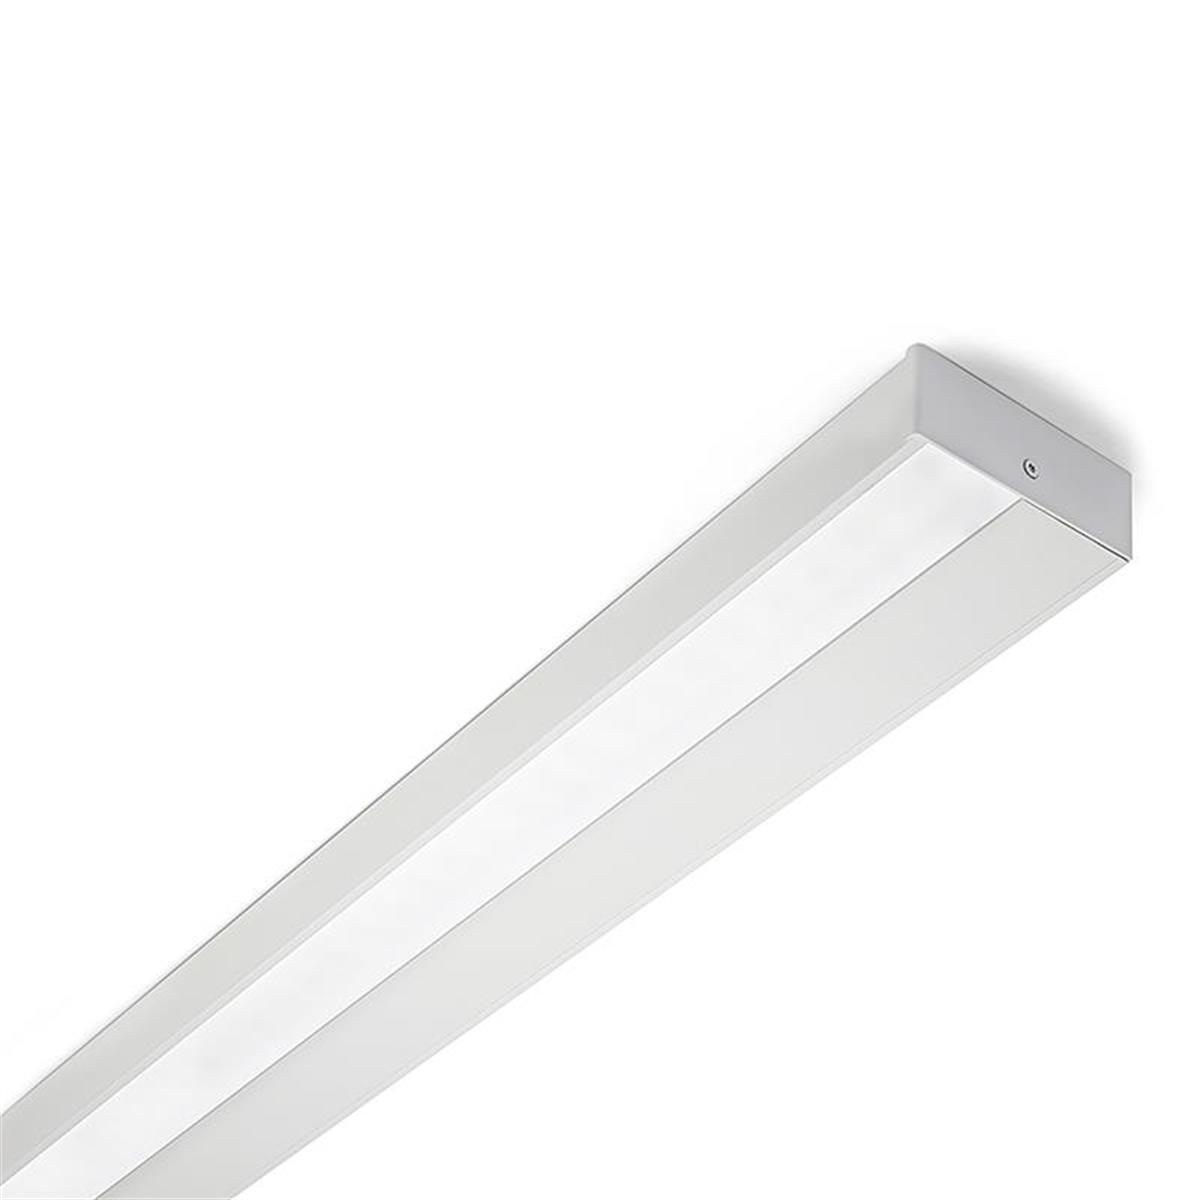 Regal surface, Armatur för belysning av köksbänkar, arbetsbänkar eller vägg